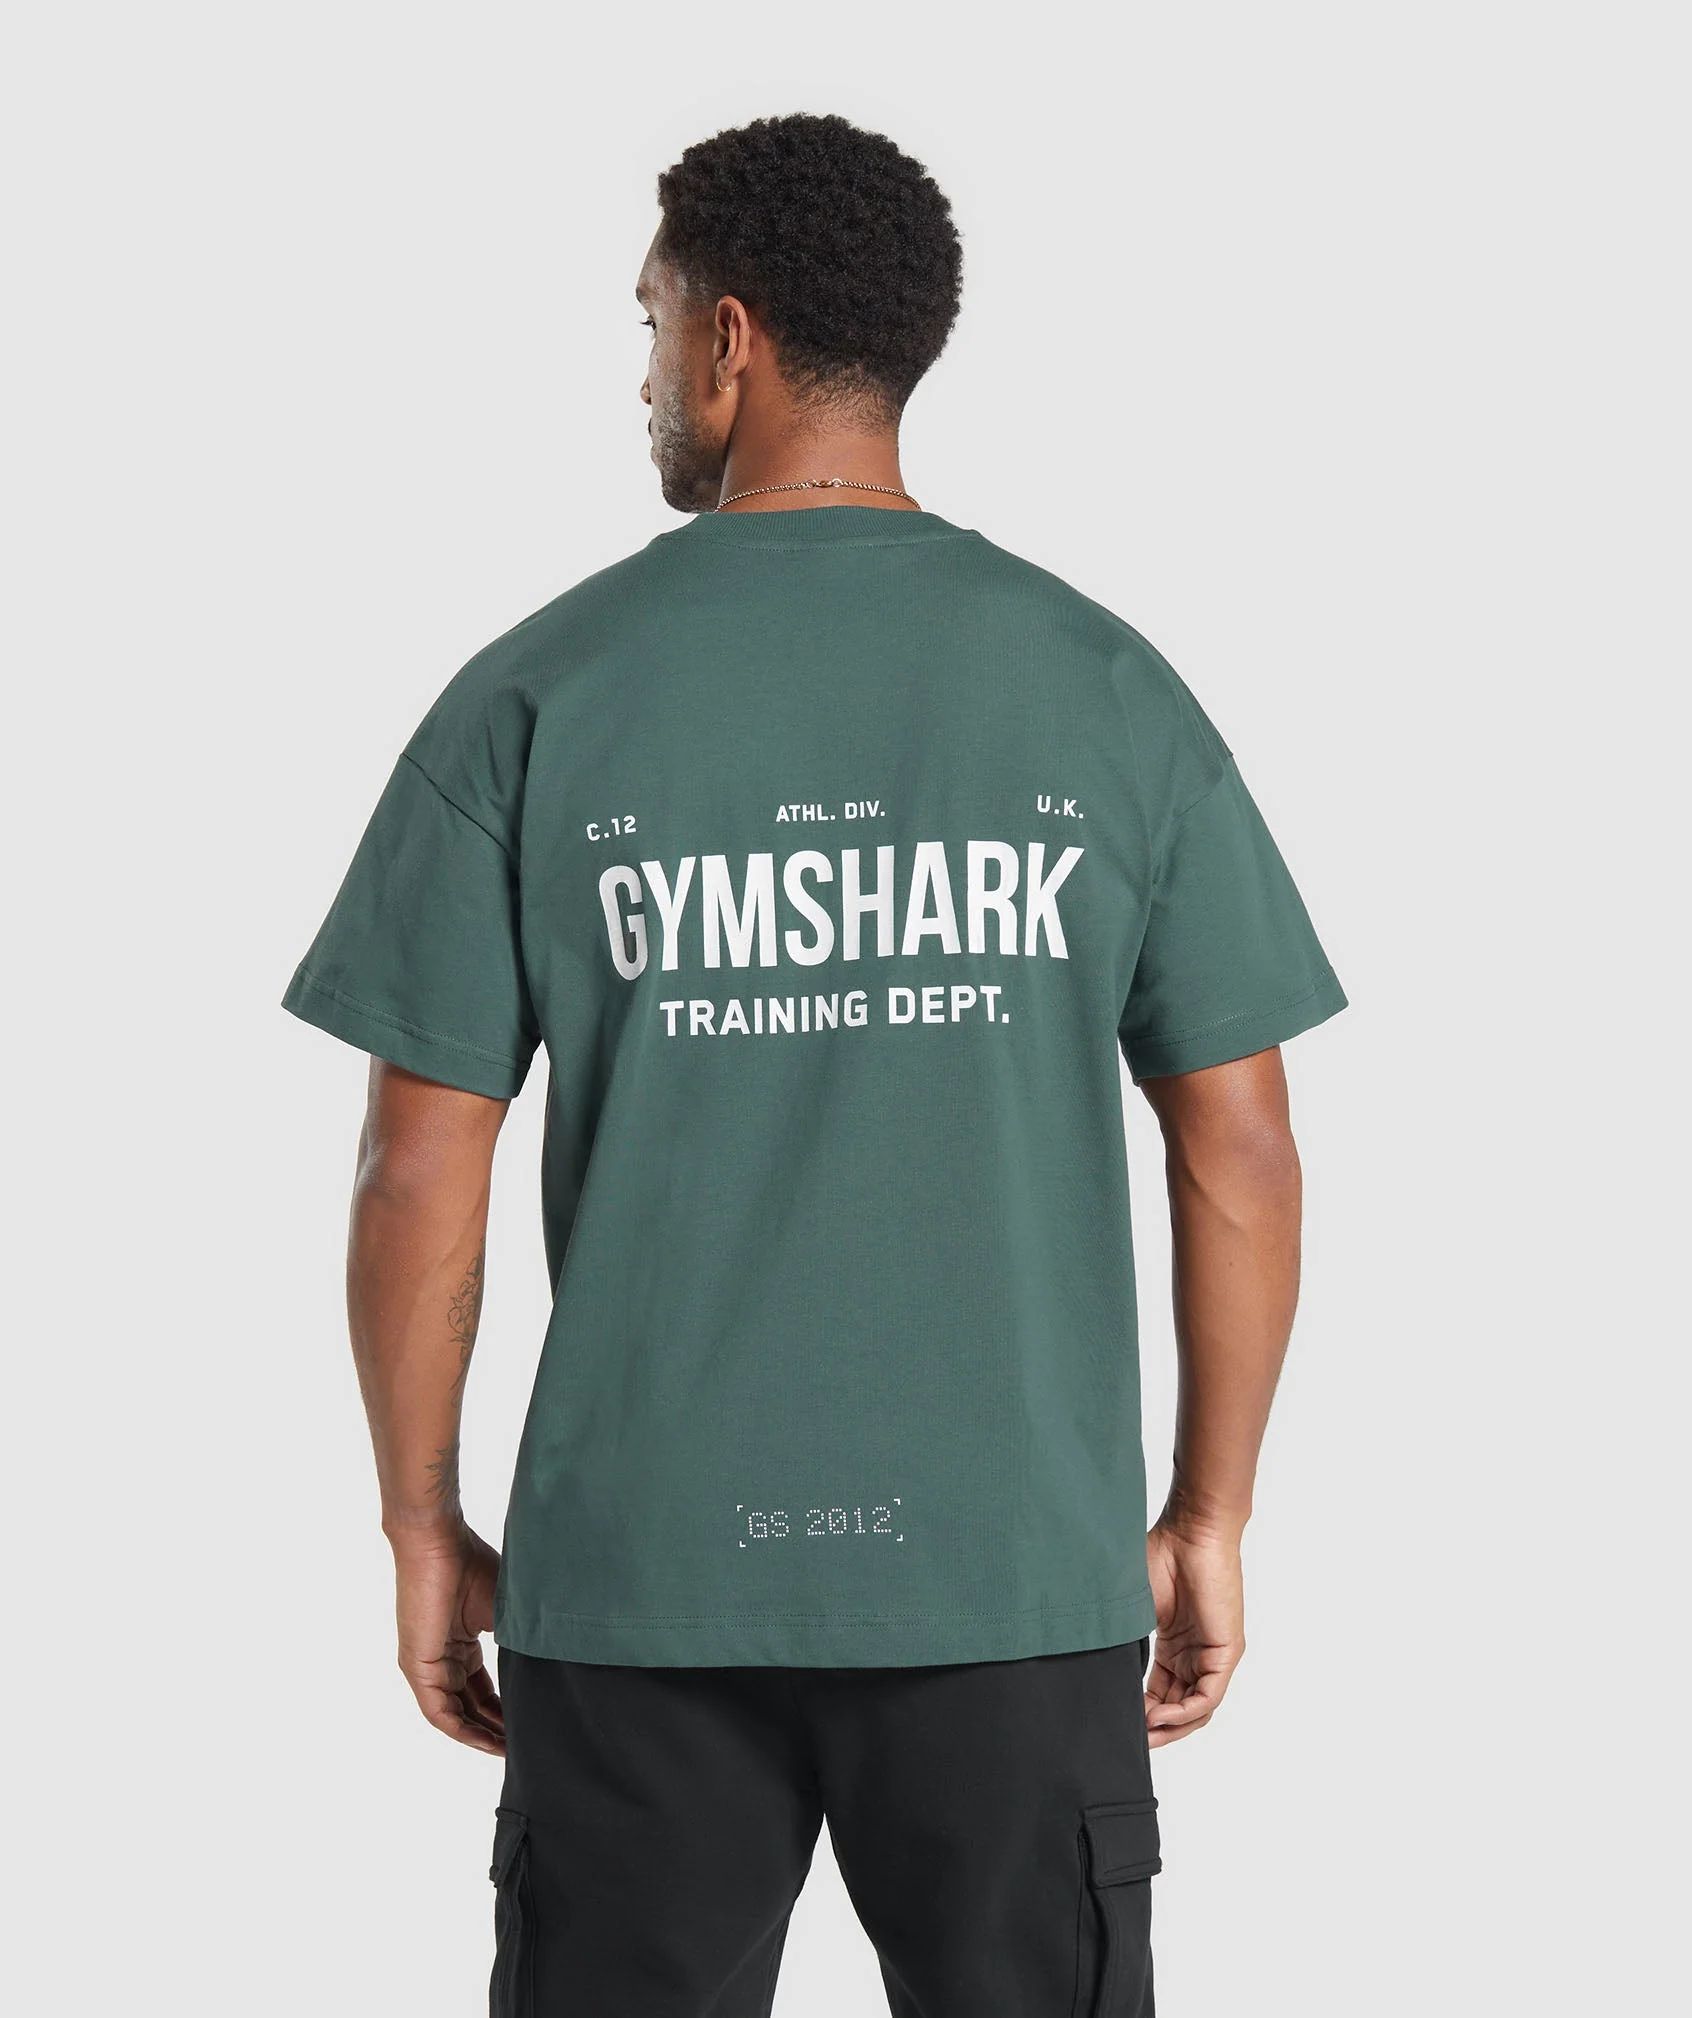 Gymshark Training Dept. T-Shirt - Fog Green | Gymshark US